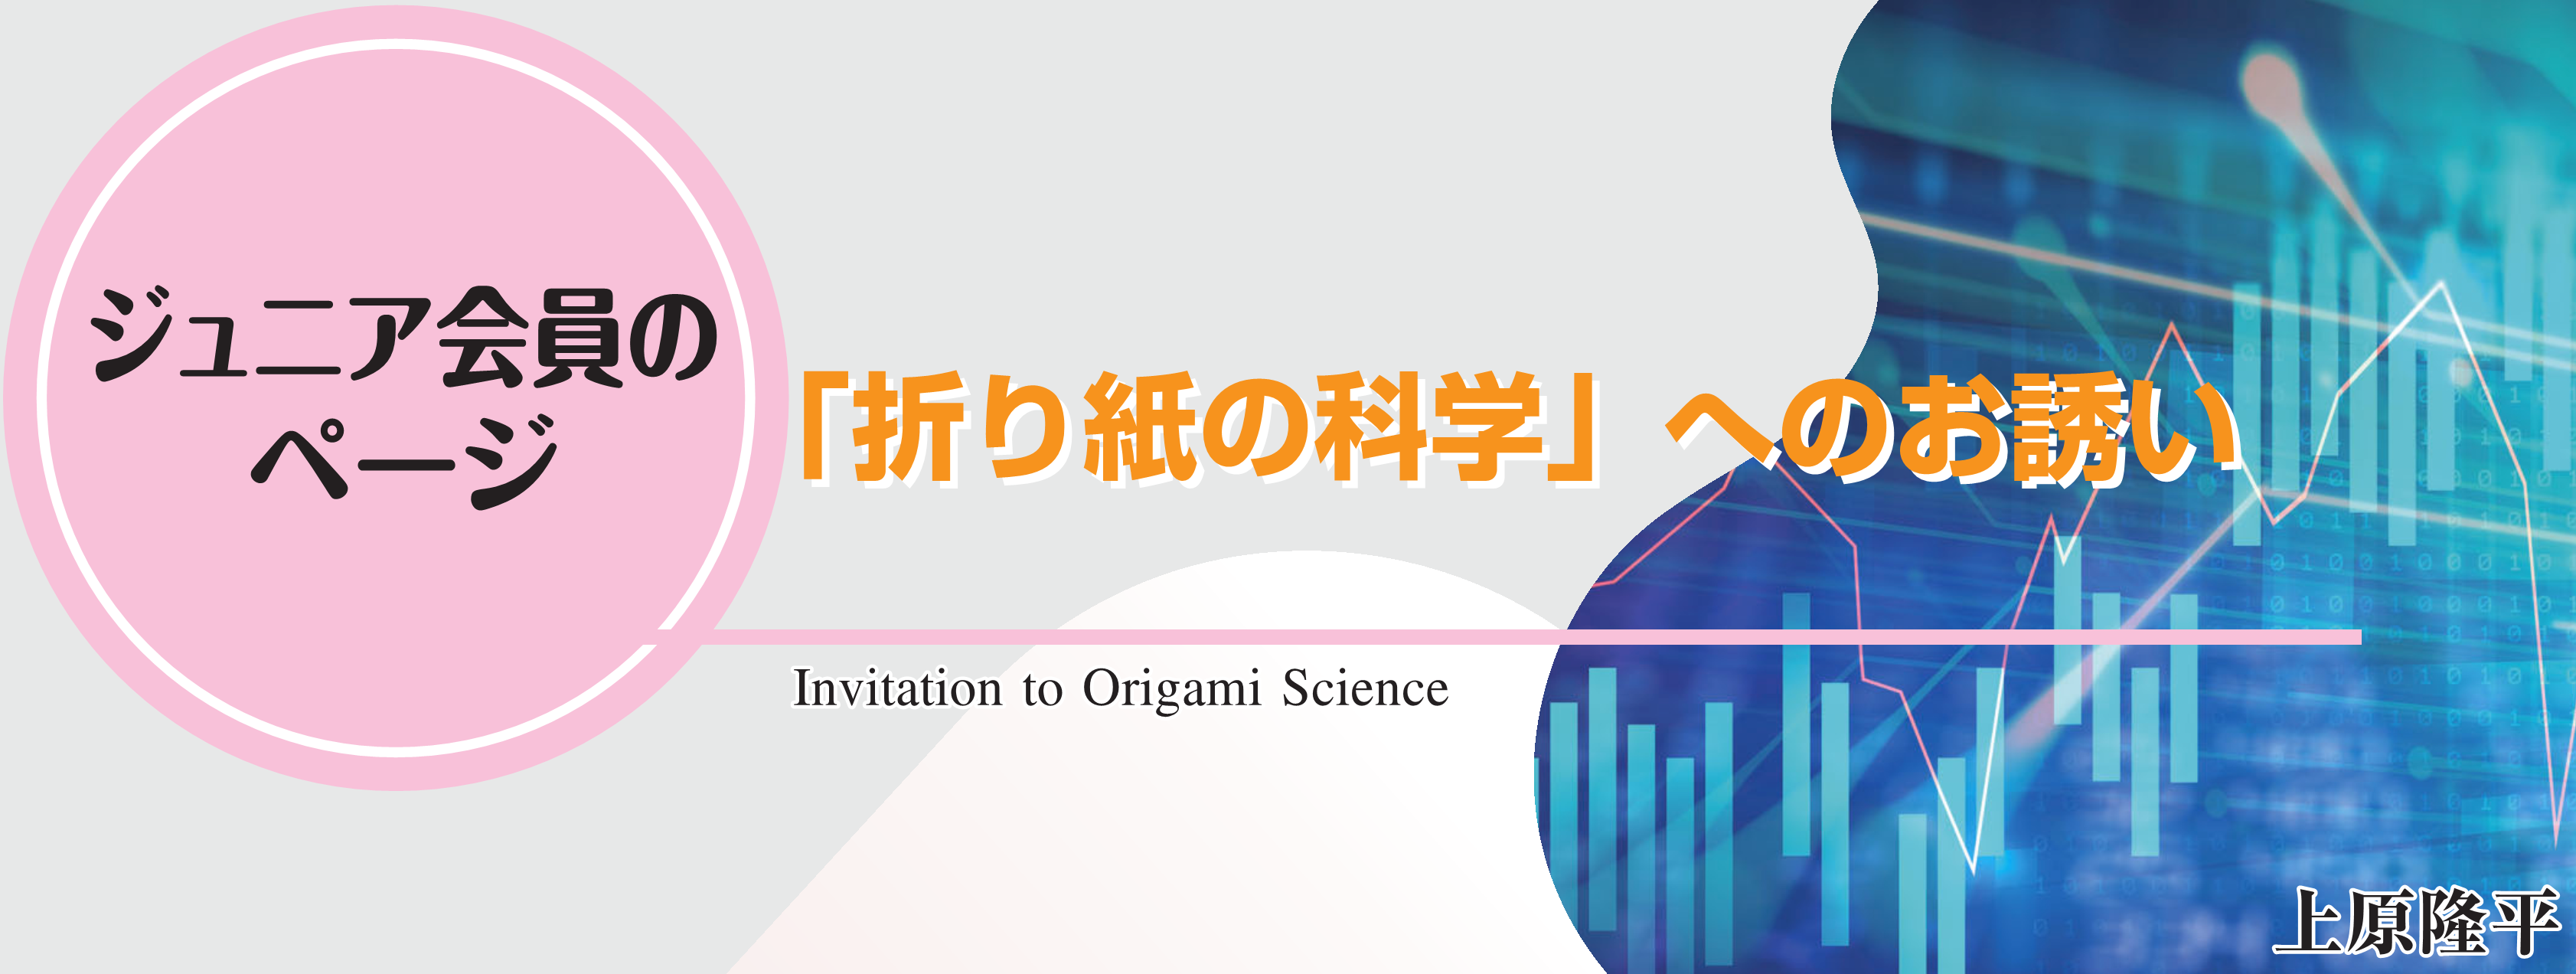 ジュニア会員のページ 「折り紙の科学」へのお誘い Invitation to Origami Science